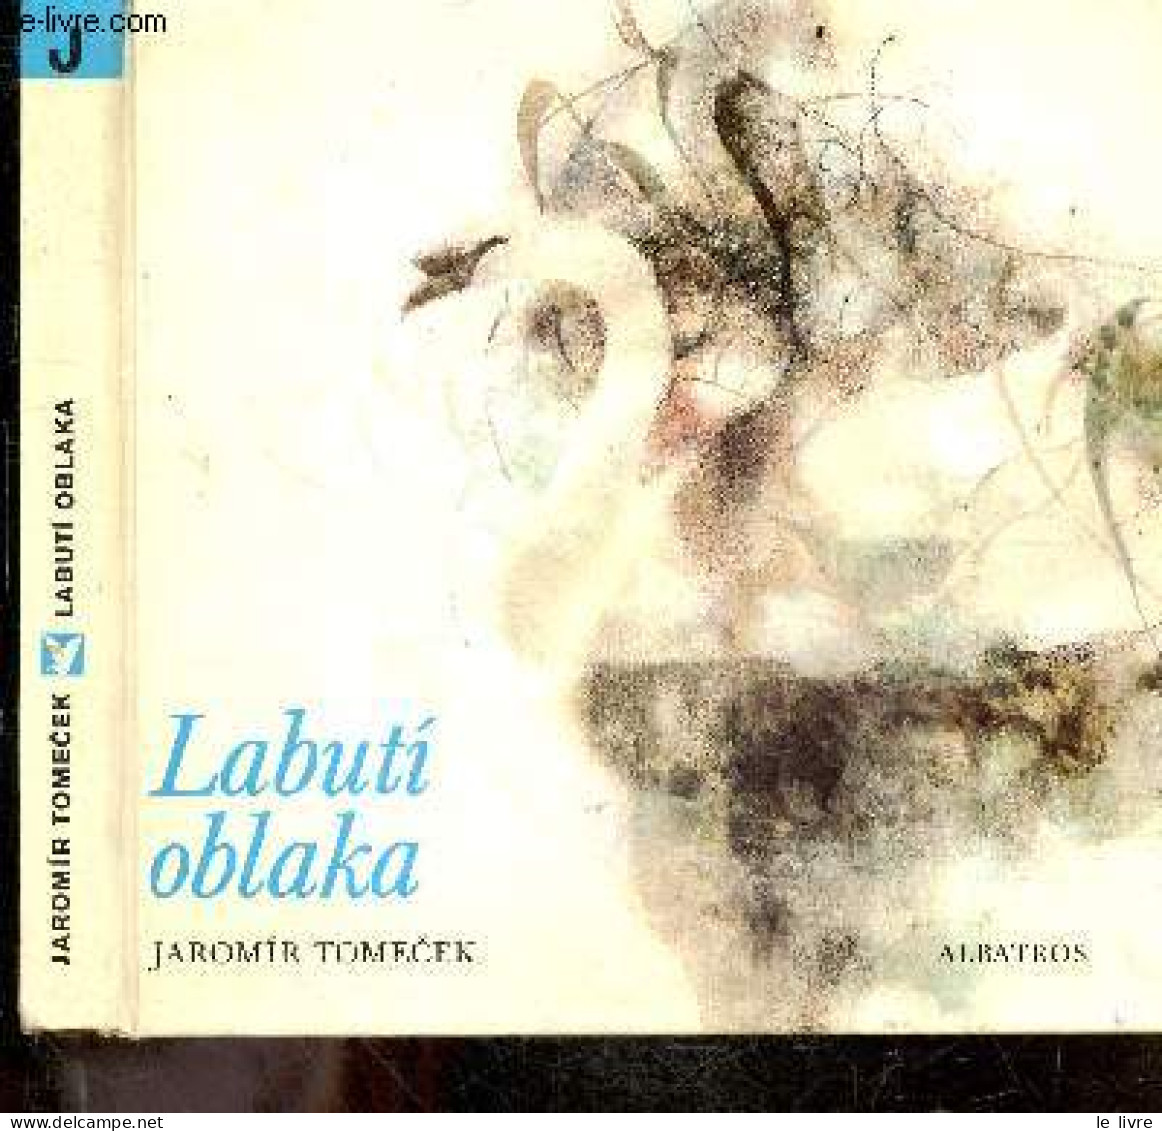 Labuti Oblaka - Saga O Luhu - JAROMIR TOMECEK - 1980 - Kultur